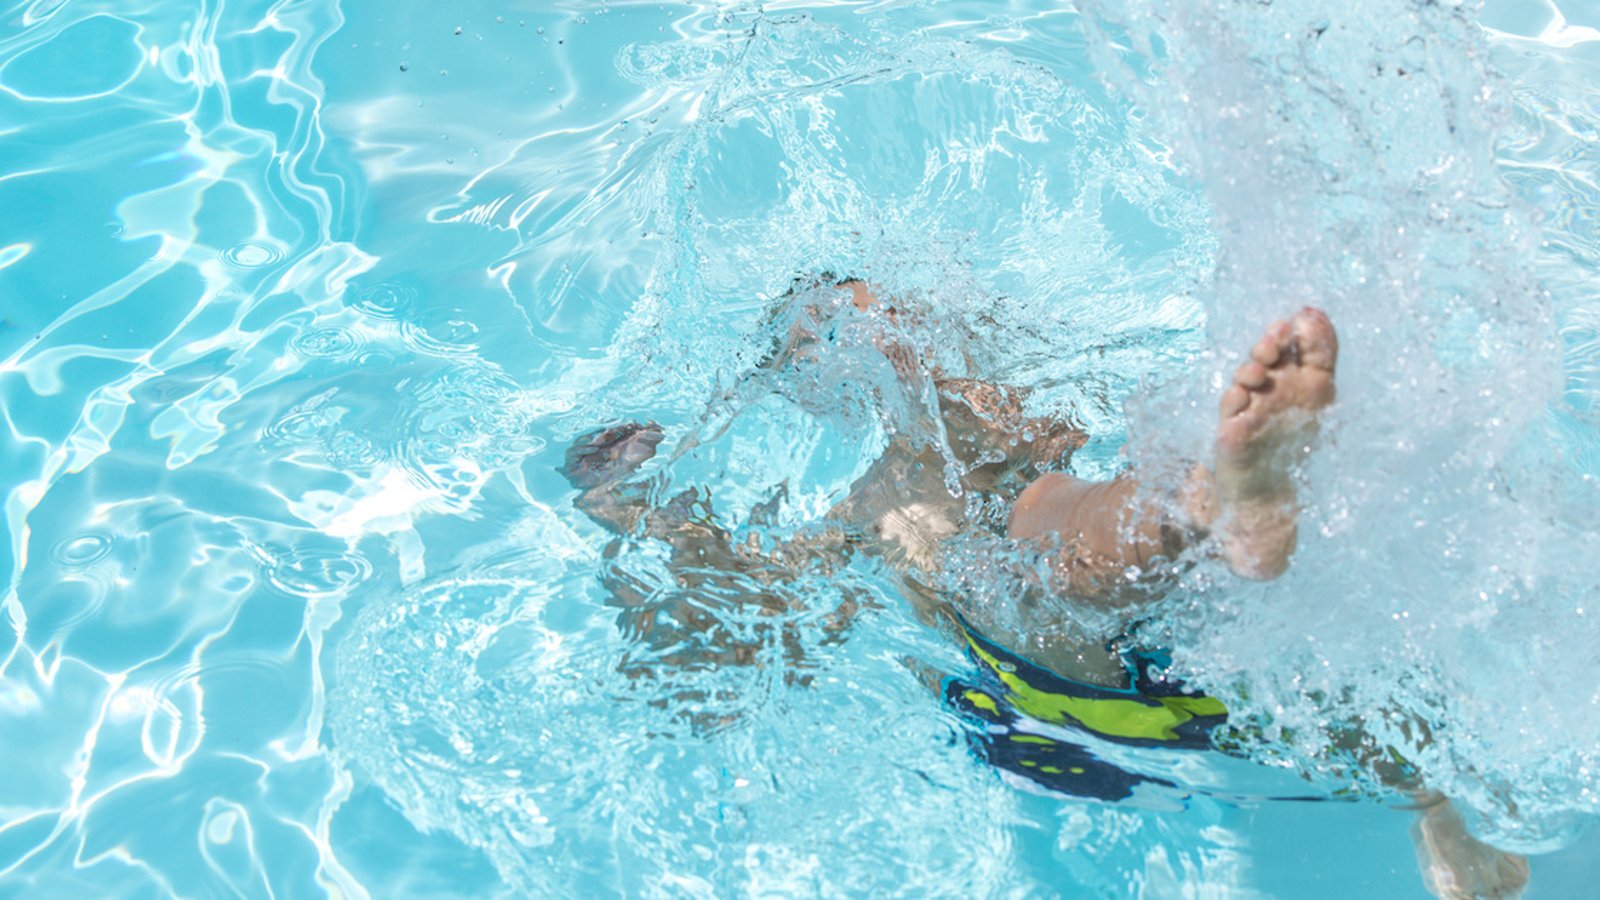 IMPORTANT: apprenez à empêcher votre enfant de se noyer